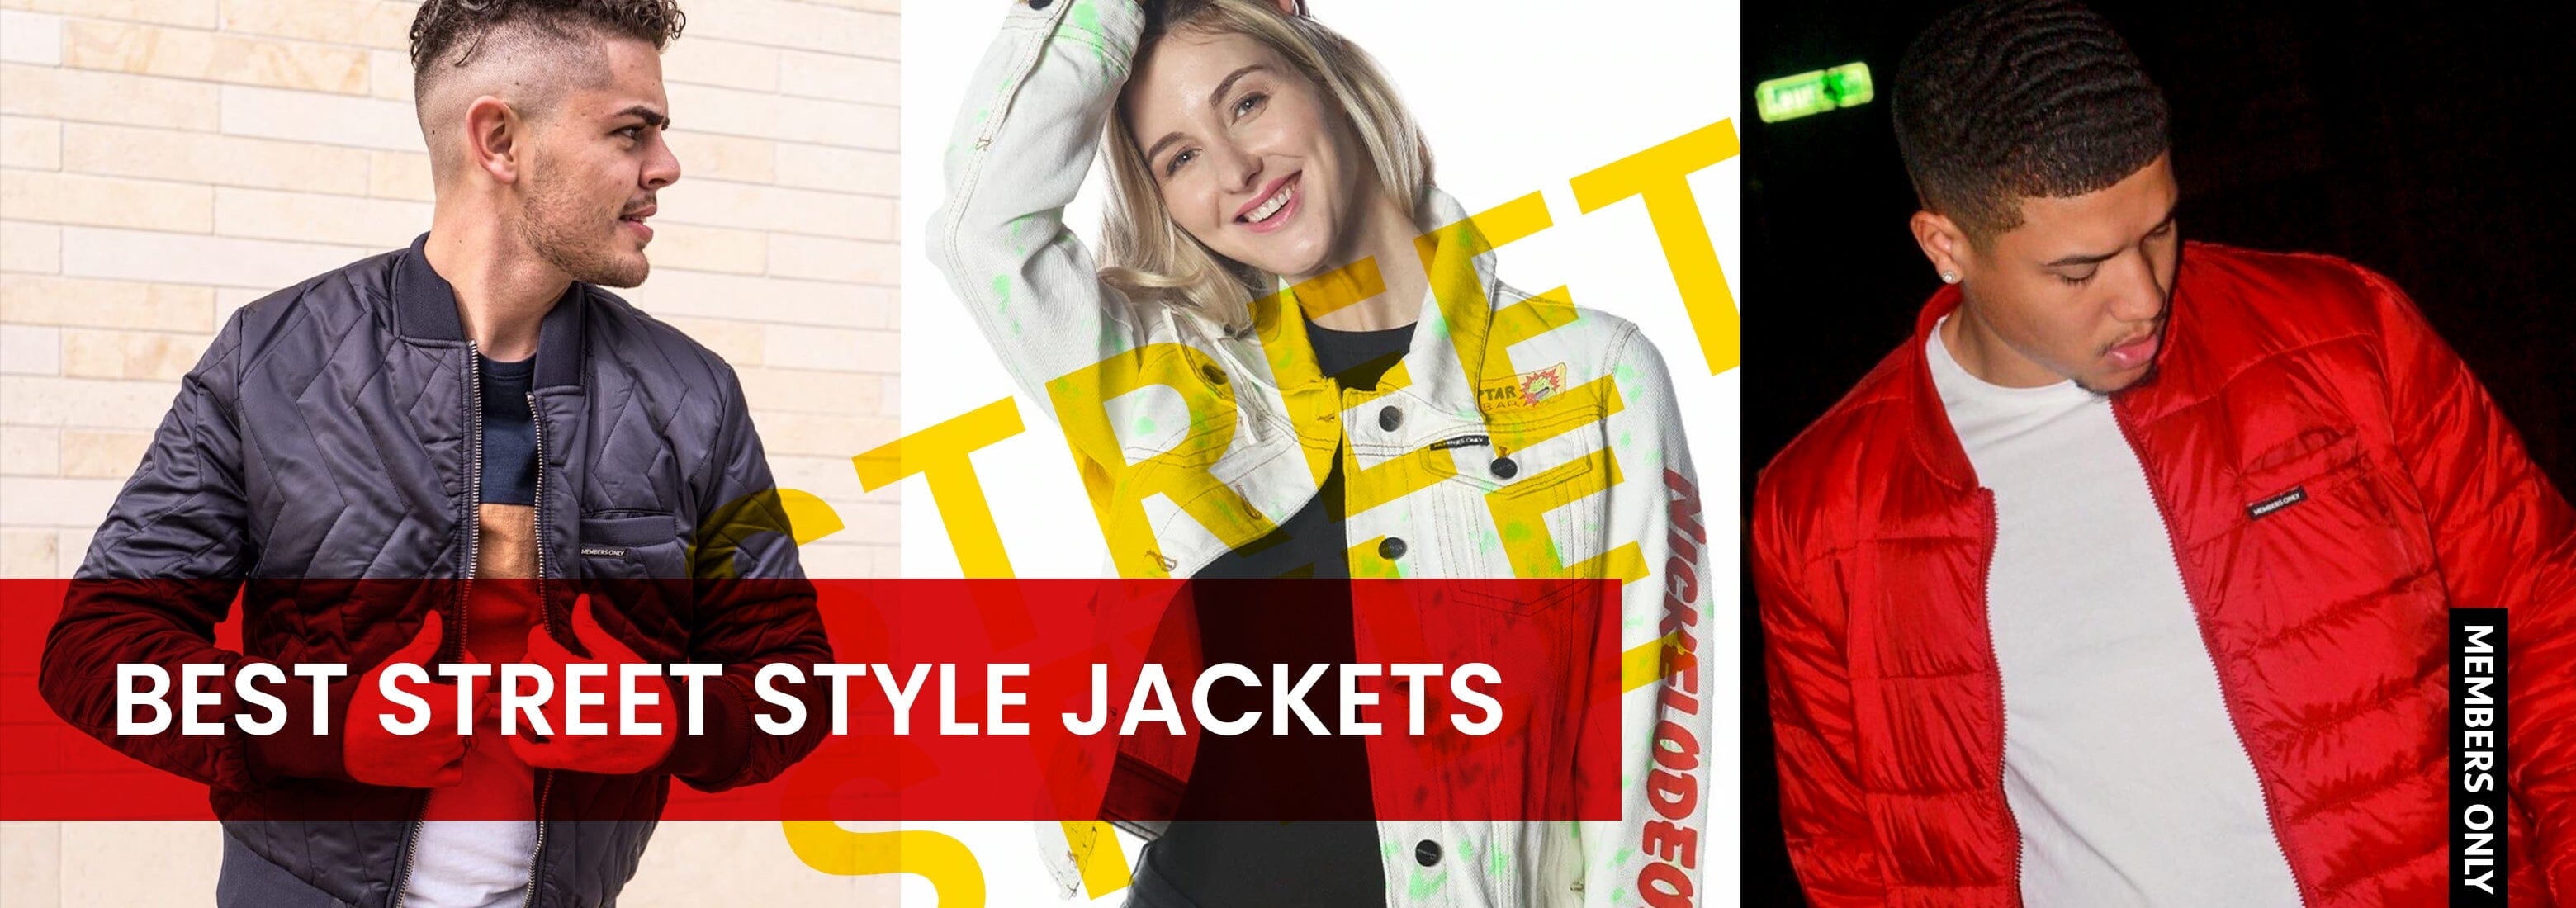 Best Street Style Jackets